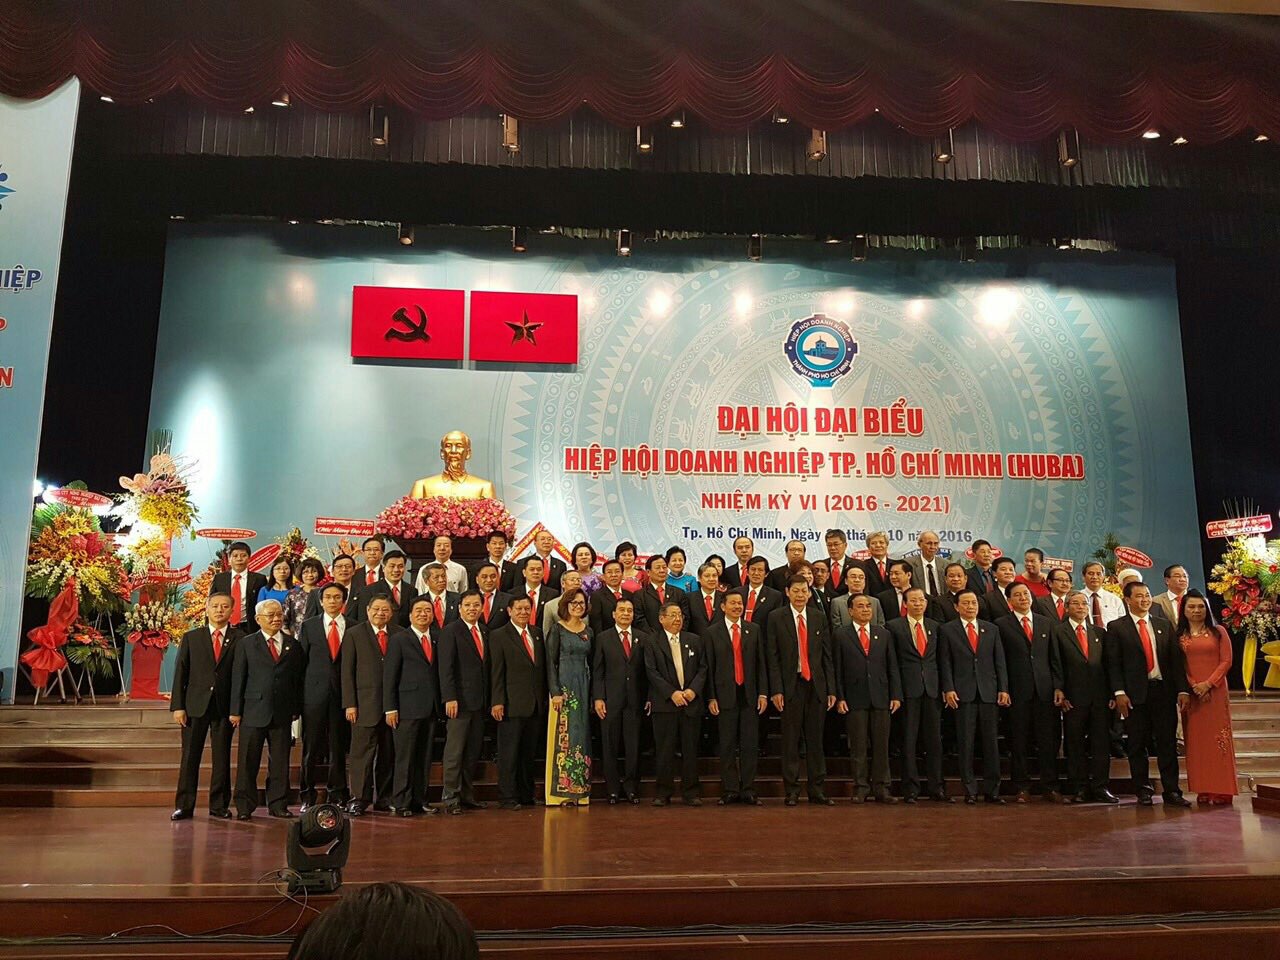 Đại hội Đại biểu Hiệp hội Doanh nghiệp TP.HCM Nhiệm kỳ VI (2016 – 2021)